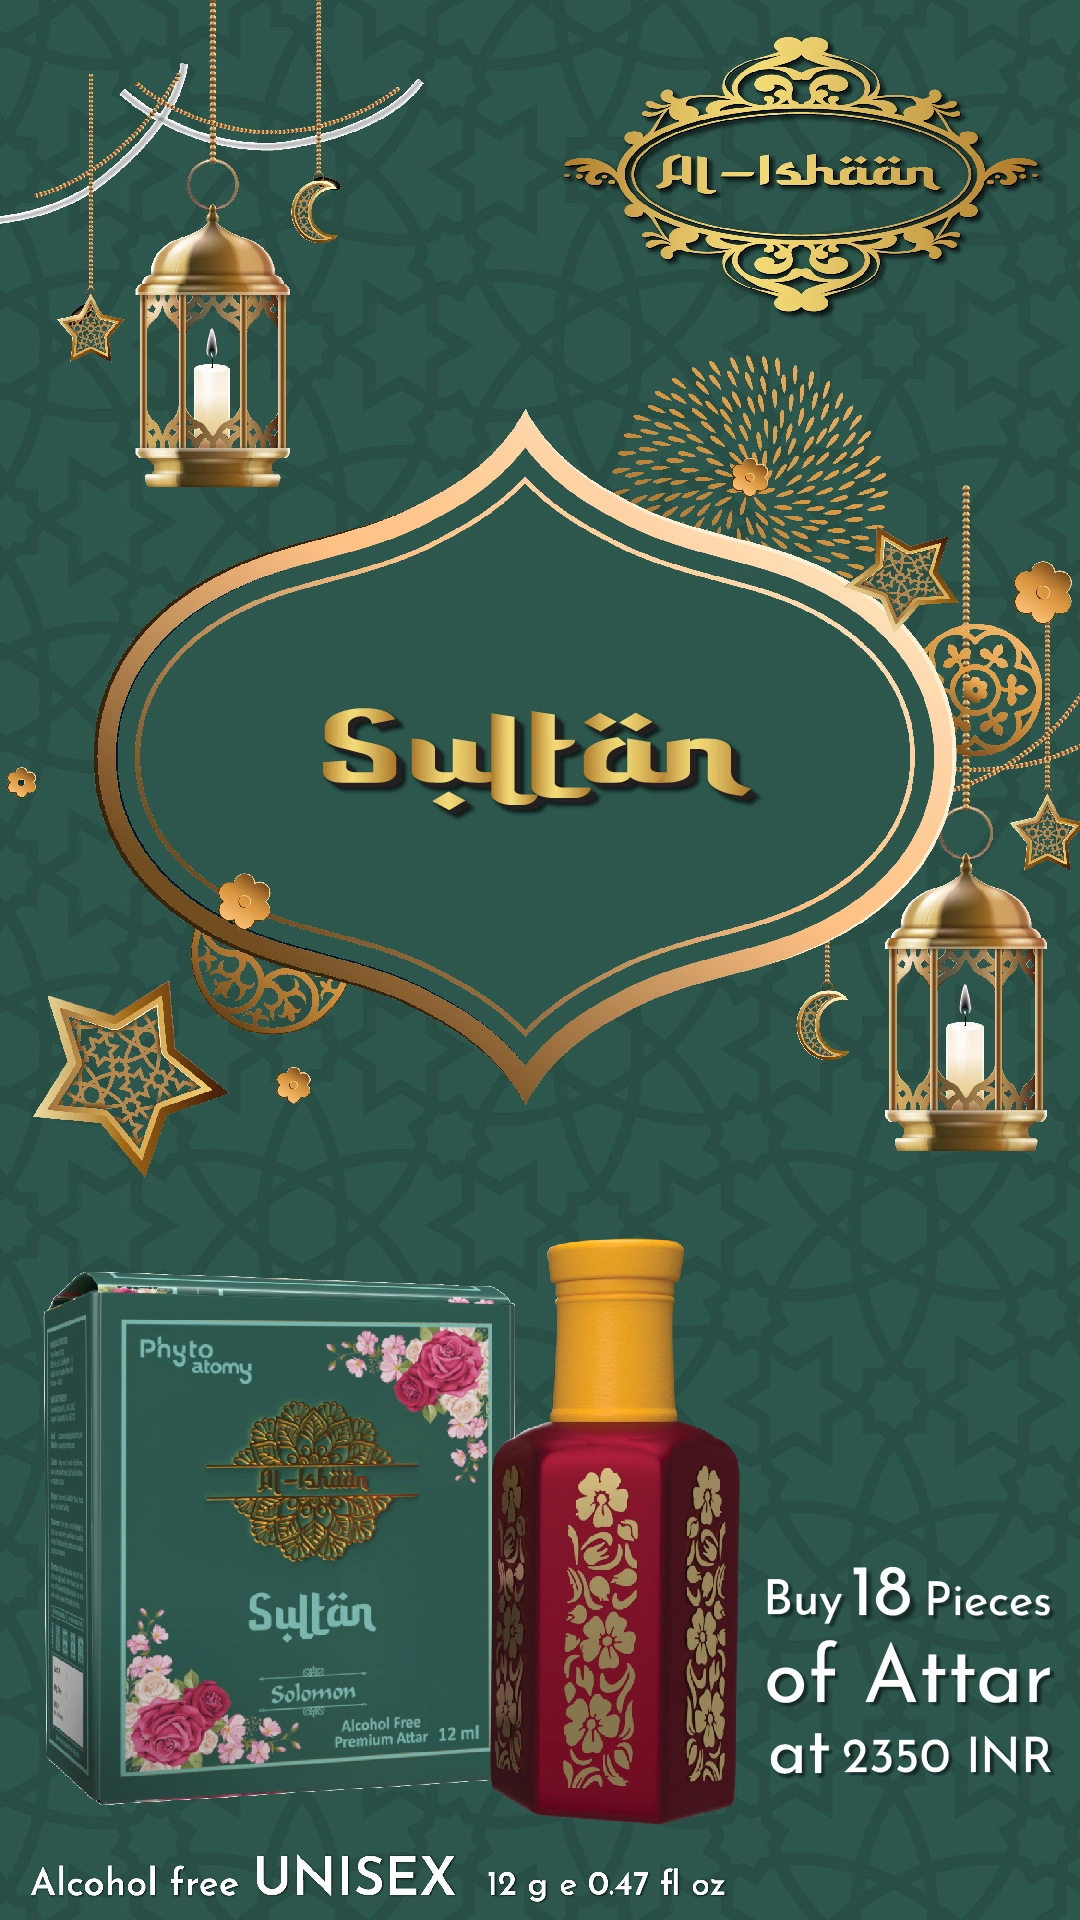 SCBV B2B Al Ishan Sultan Attar (12ml)-18 Pcs.